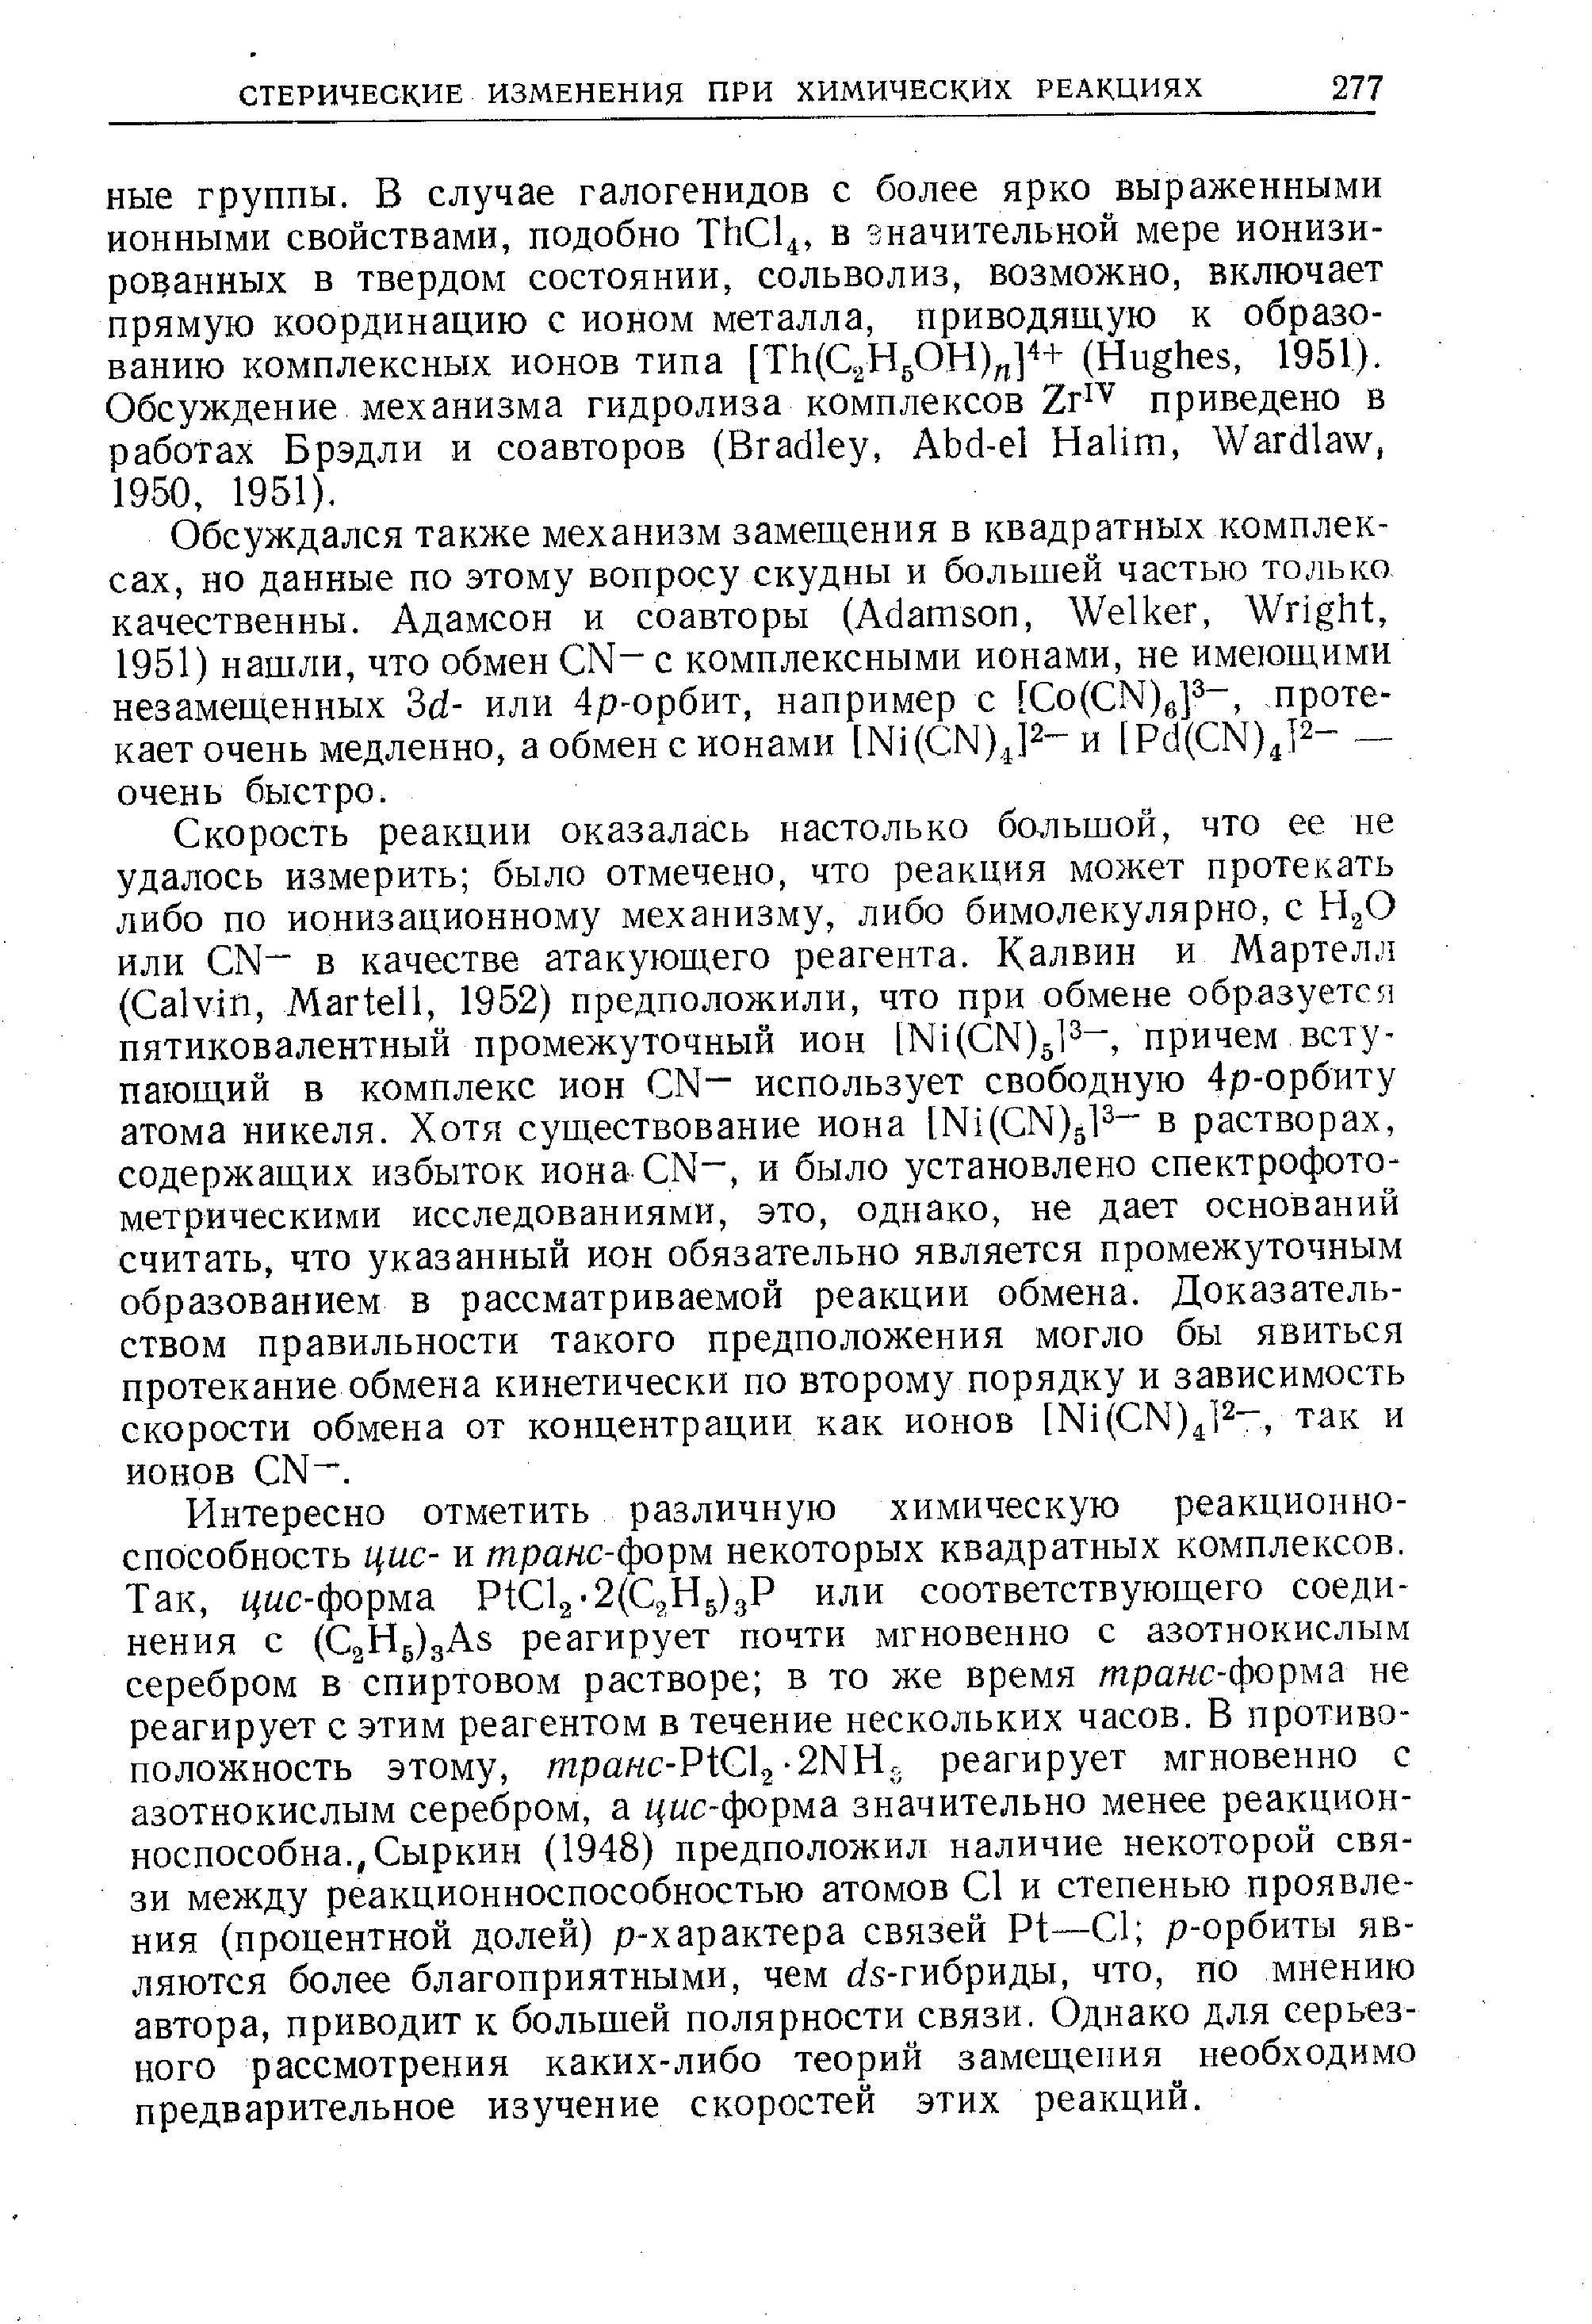 Скорость реакции оказалась настолько большой, что ее не удалось измерить было отмечено, что реакция может протекать либо по ионизационному механизму, либо бимолекулярно, с НдО или N - в качестве атакующего реагента. Калвин и Мартелл ( alvin, Martell, 1952) предположили, что при обмене образуется пятиковалентный промежуточный ион [Ni( N)5l3 , причем вступающий в комплекс ион N- использует свободную 4р-орбиту атома никеля. Хотя существование иона [Ni(GN)gl2- в растворах, содержащих избыток иона N , и было установлено спектрофотометрическими исследованиями, это, однако, не дает оснований считать, что указанный ион обязательно является промежуточным образованием в рассматриваемой реакции обмена. Доказательством правильности такого предположения могло бы явиться протекание обмена кинетически по второму порядку и зависимость скорости обмена от концентрации как ионов [Ni( N) ]2-, так и ионов N-.